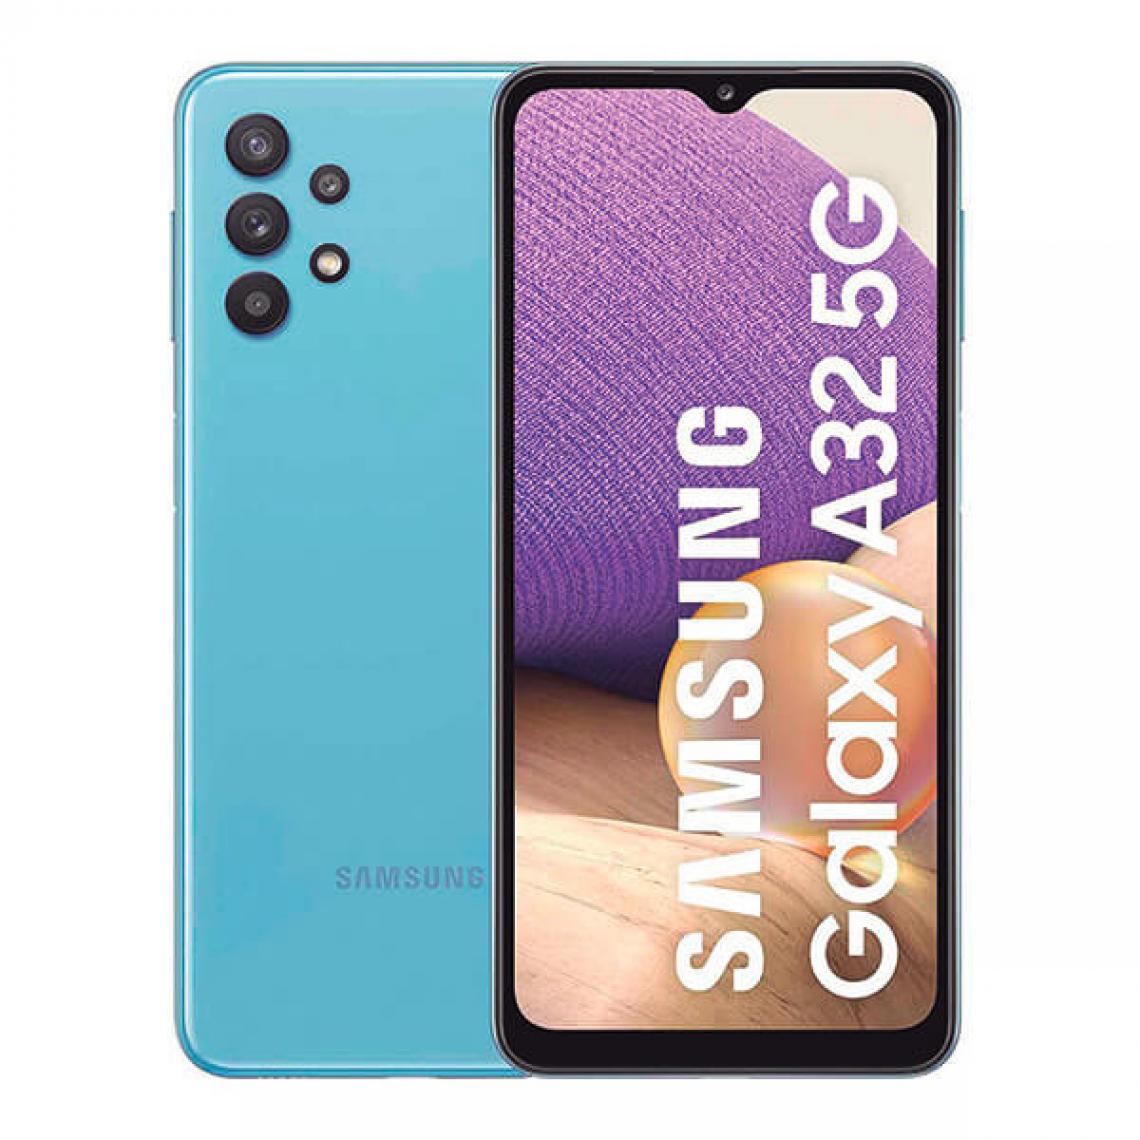 Samsung - Samsung Galaxy A32 5G 4GB/64GB Azul (Awesome Blue) Dual SIM SM-A326B - Smartphone Android